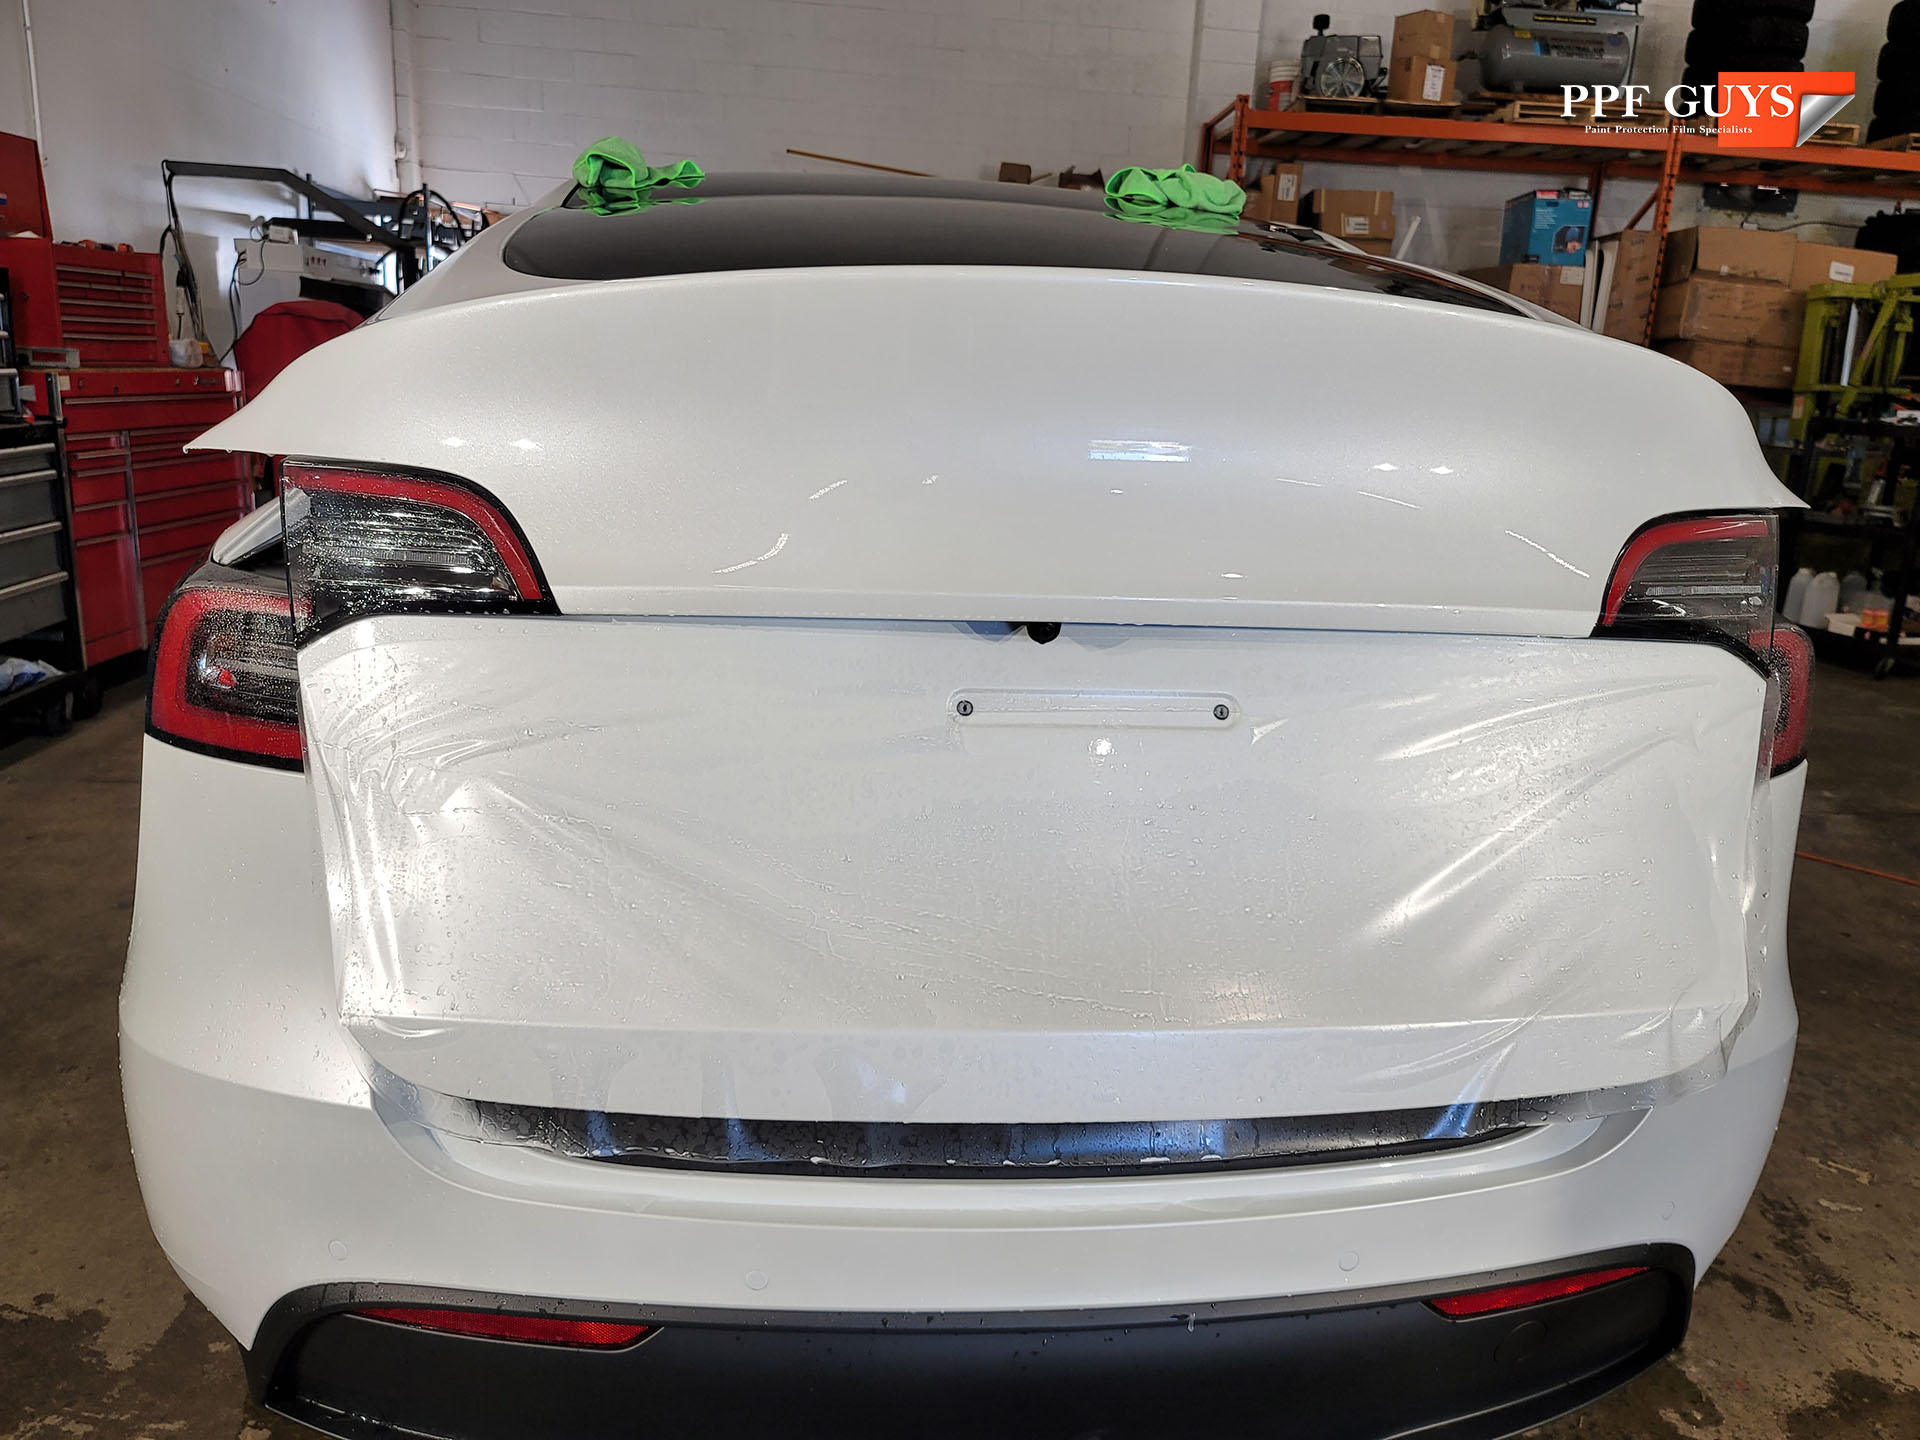 PPF Guys Tesla Model Y LR Xpel Stealth (24).jpg